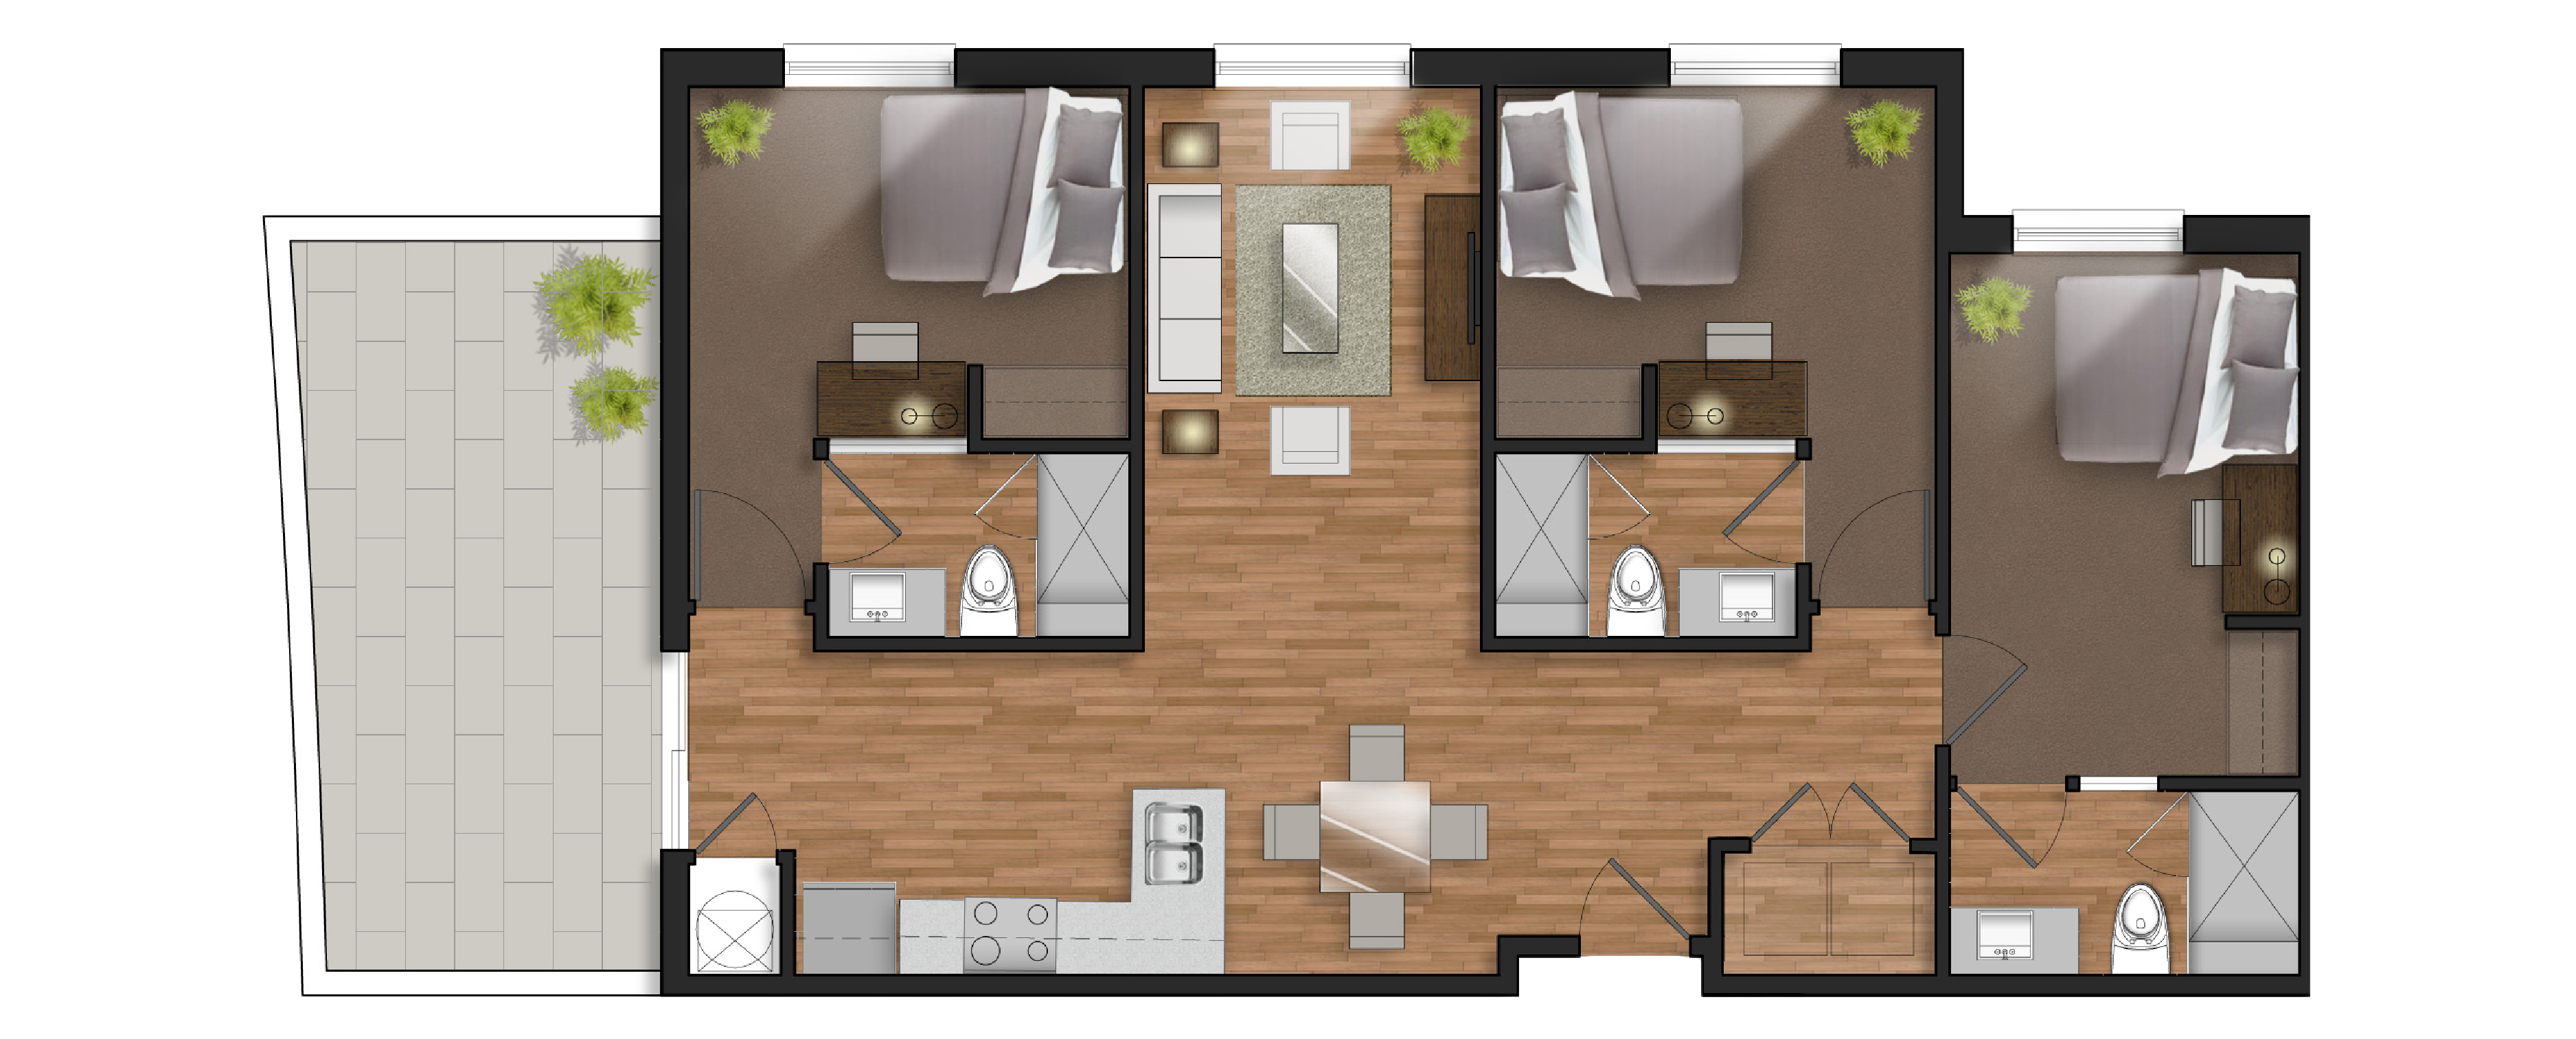 3 bedroom student apartment floor plan